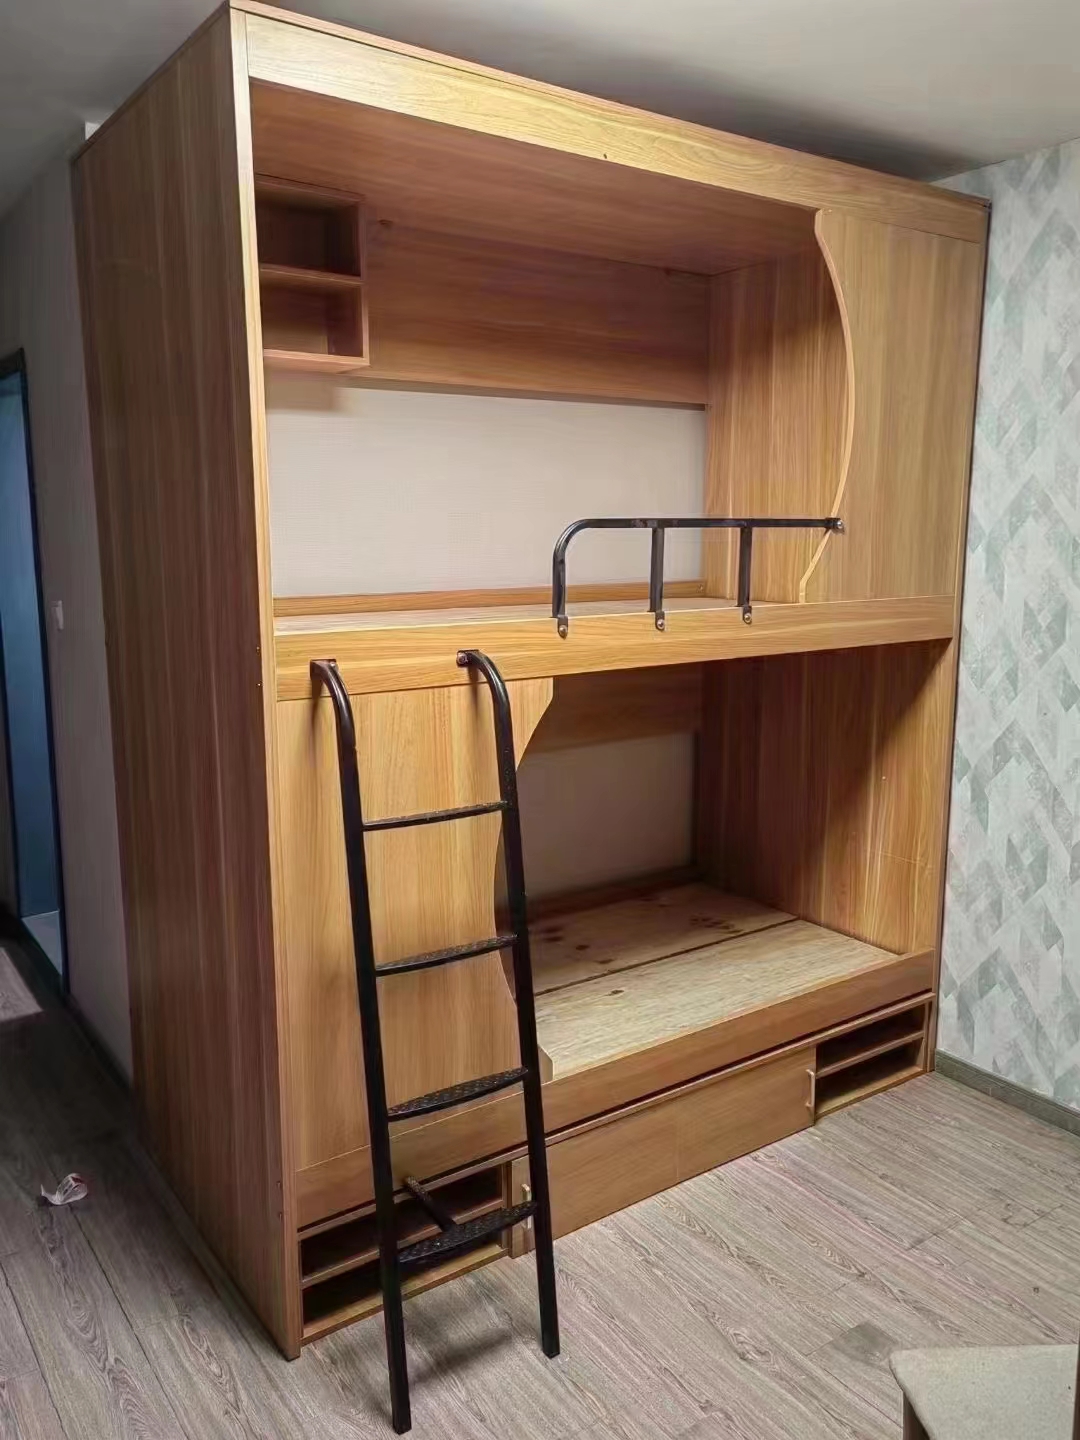 学生宿舍员工公寓简约实木太空舱床成人多功能高低上下双层床组合